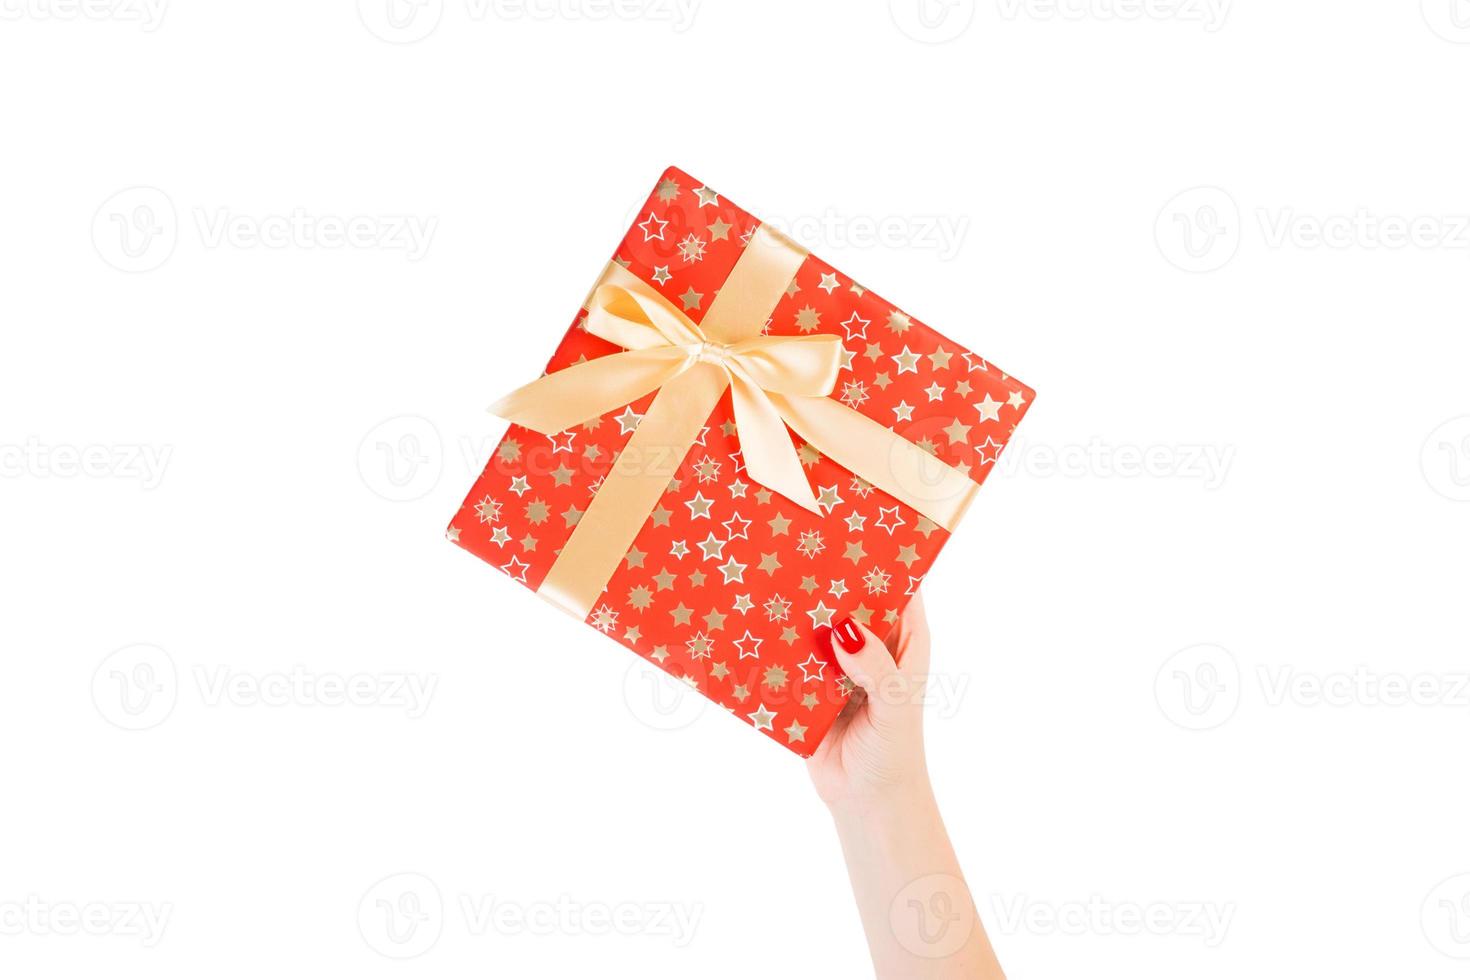 les mains de la femme donnent un noël enveloppé ou d'autres vacances faites à la main dans du papier rouge avec un ruban d'or. isolé sur fond blanc, vue de dessus. concept de boîte-cadeau d'action de grâces photo